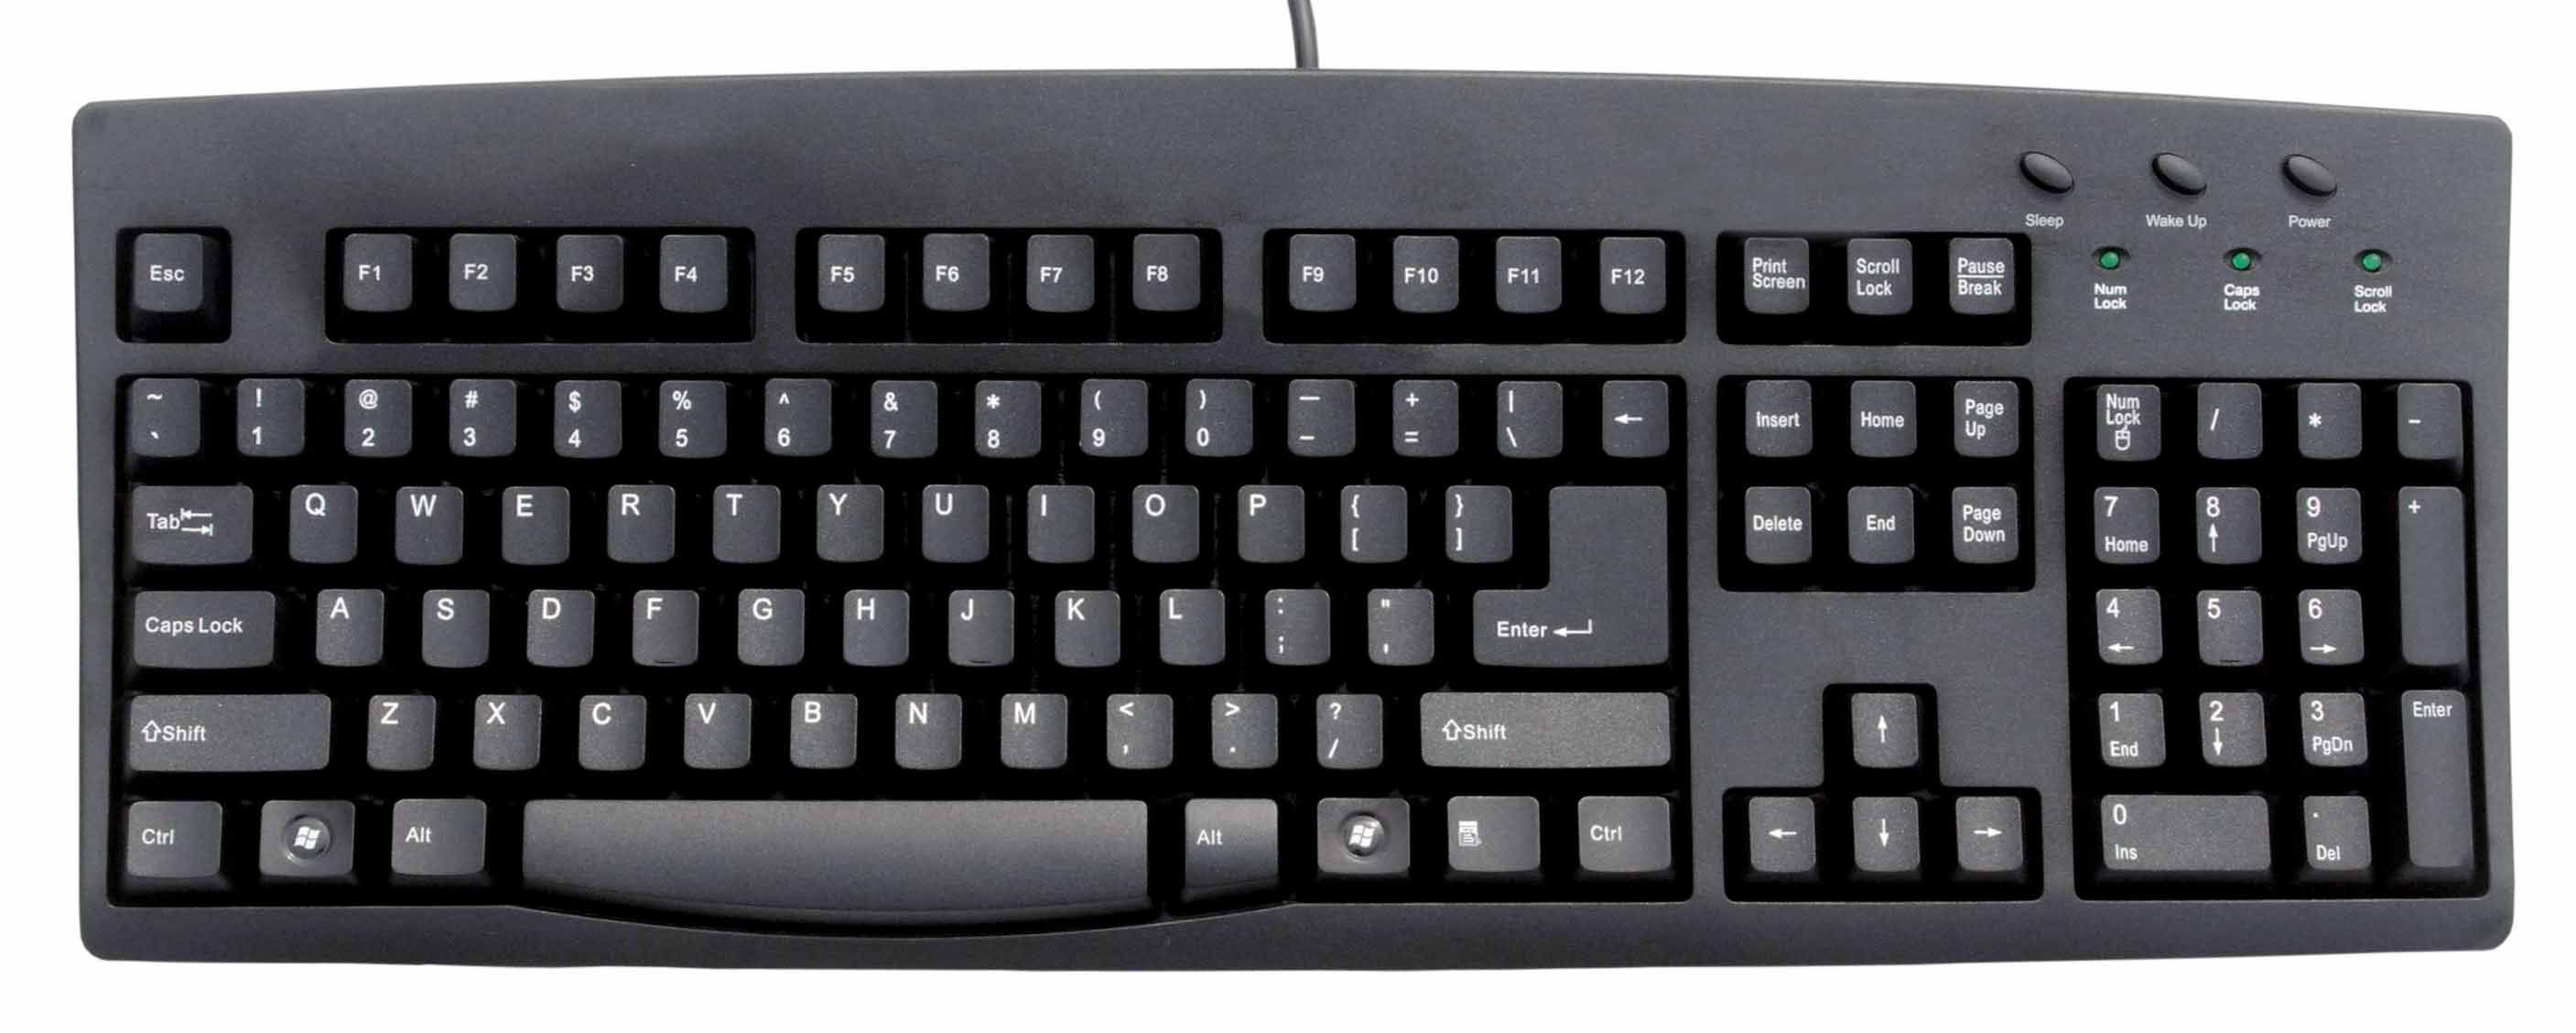 Mr. Mel's Blog: Computer Keyboards